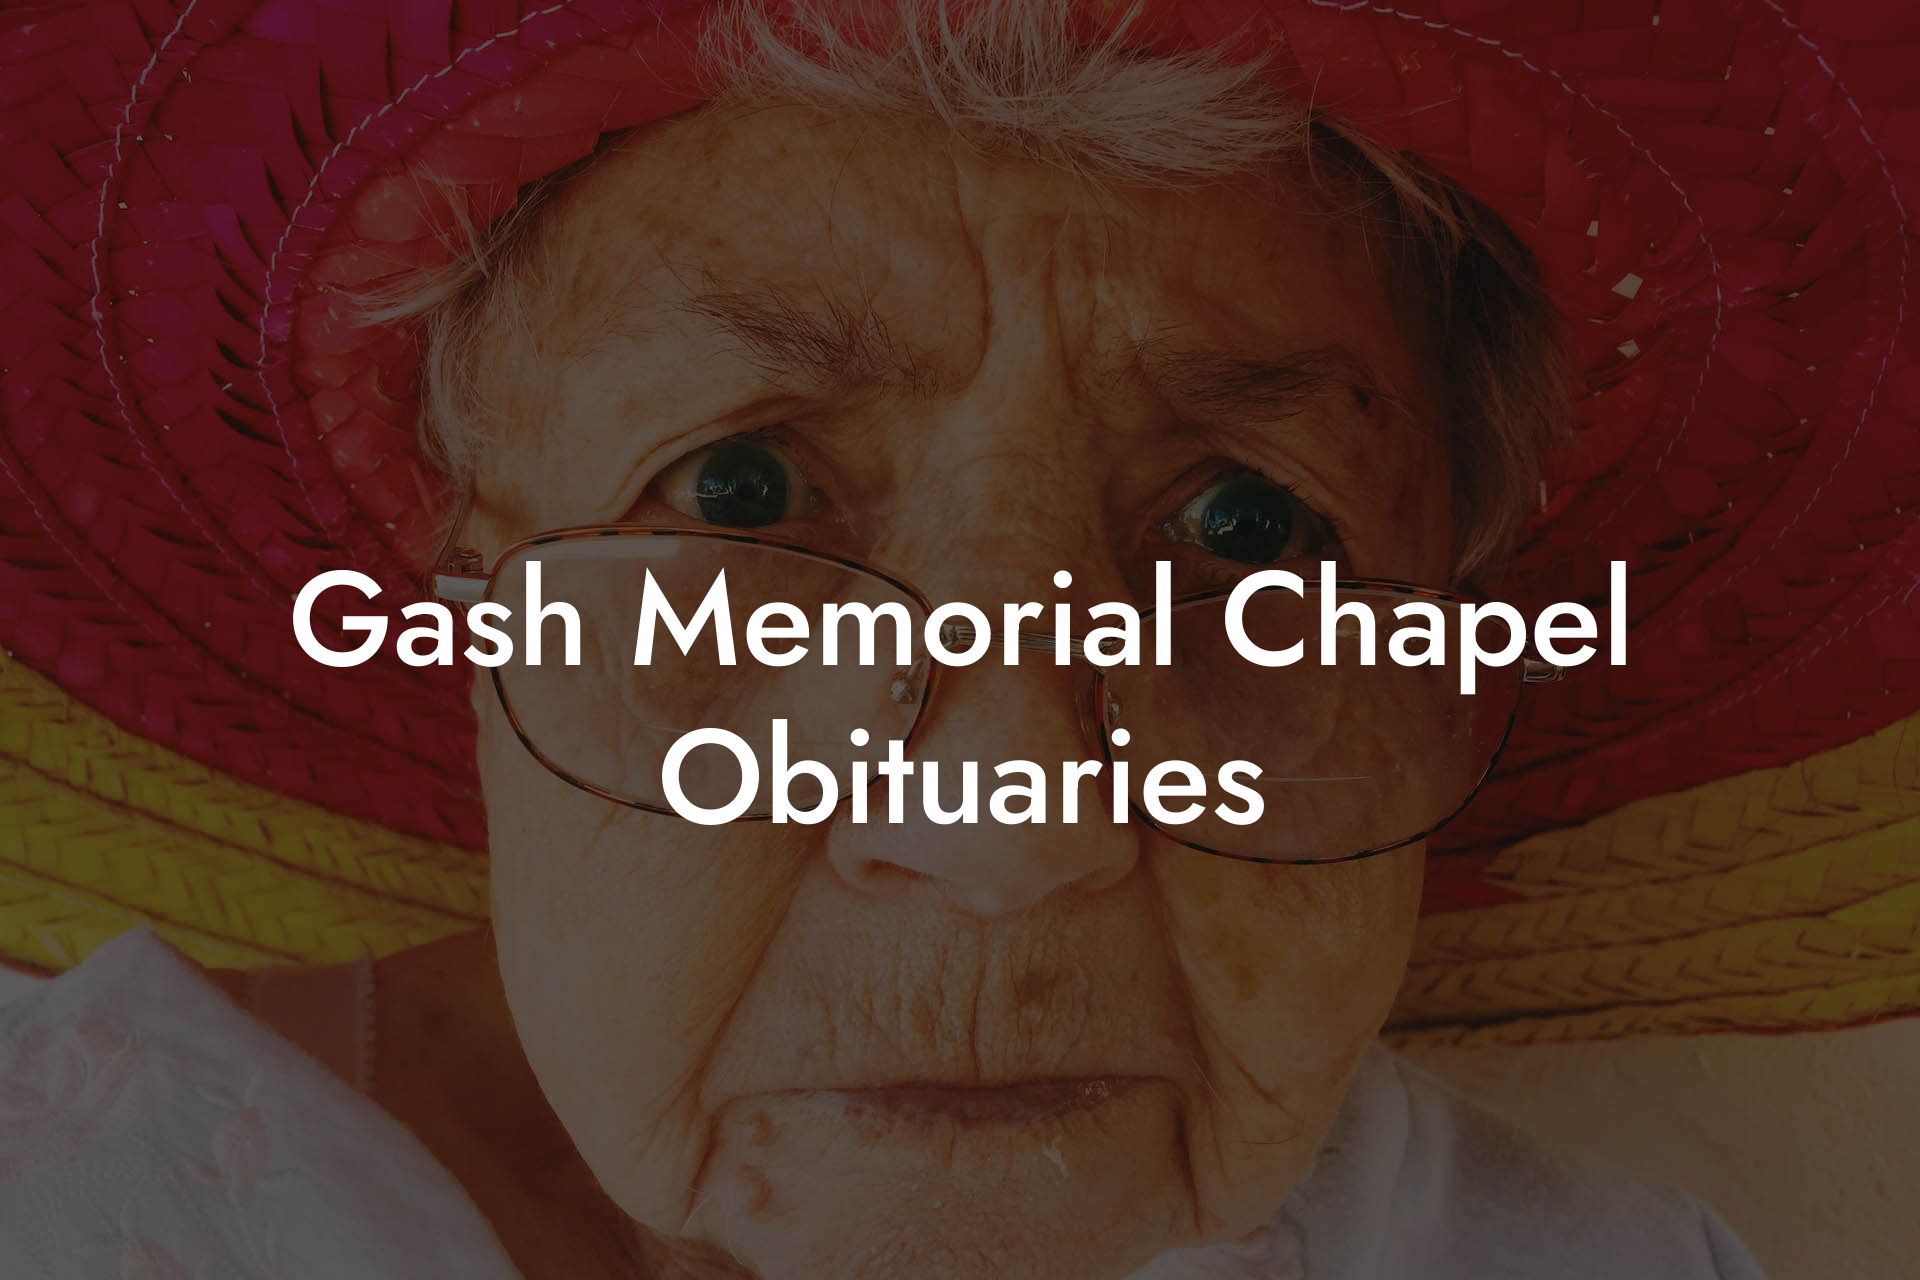 Gash Memorial Chapel Obituaries